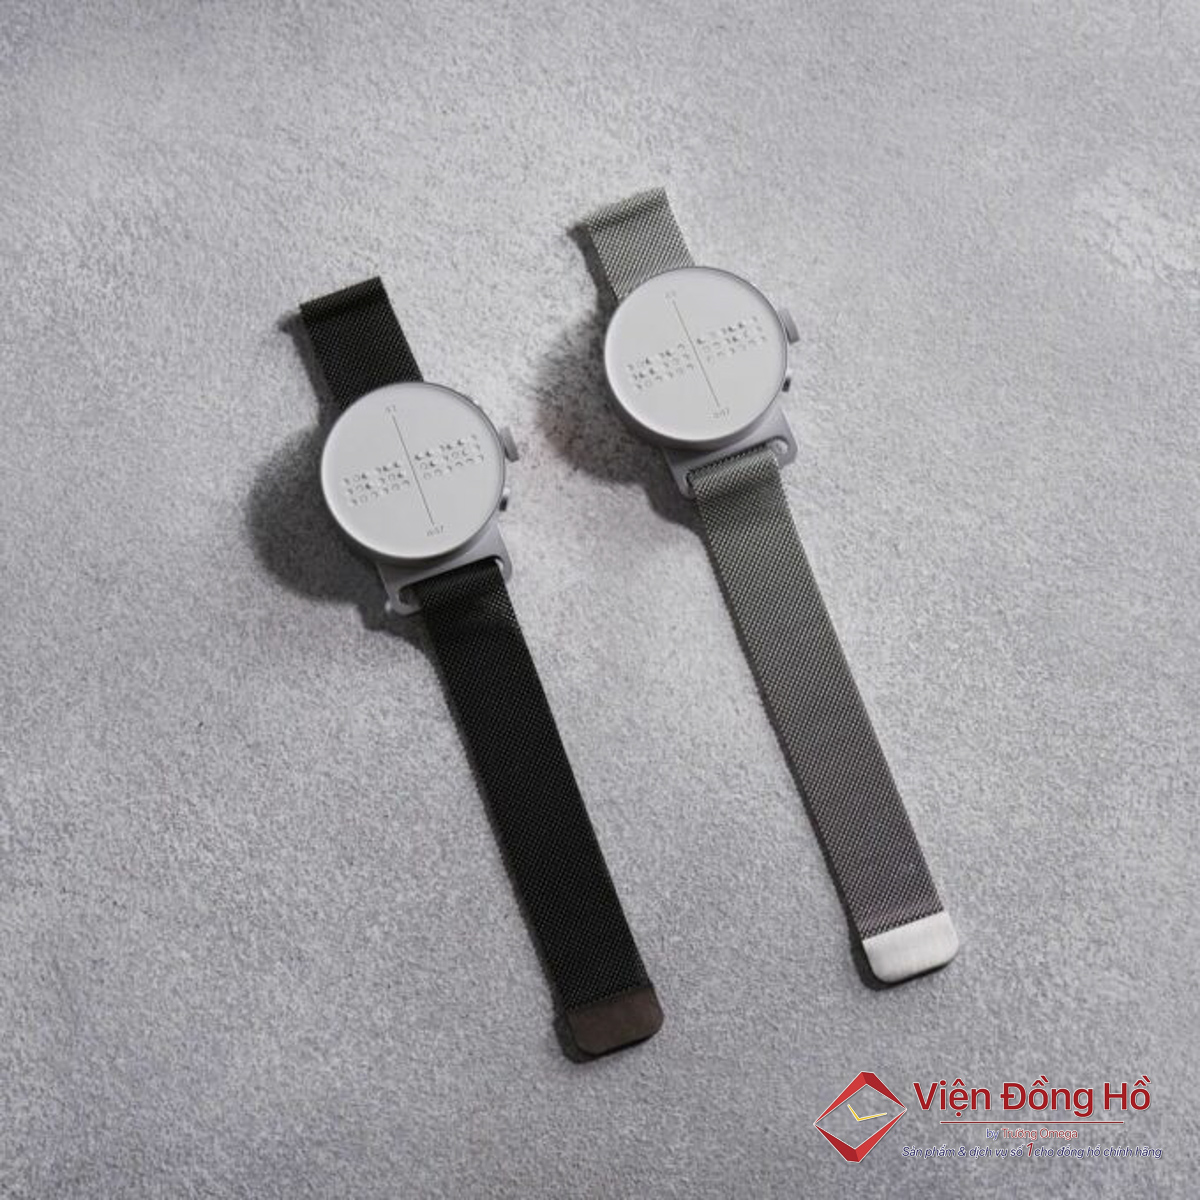 Đồng hồ Dot Watch sử dụng chữ nổi thông minh để người đeo có thể nhận biết thời gian qua các chấm dot hiển thị trên màn hình